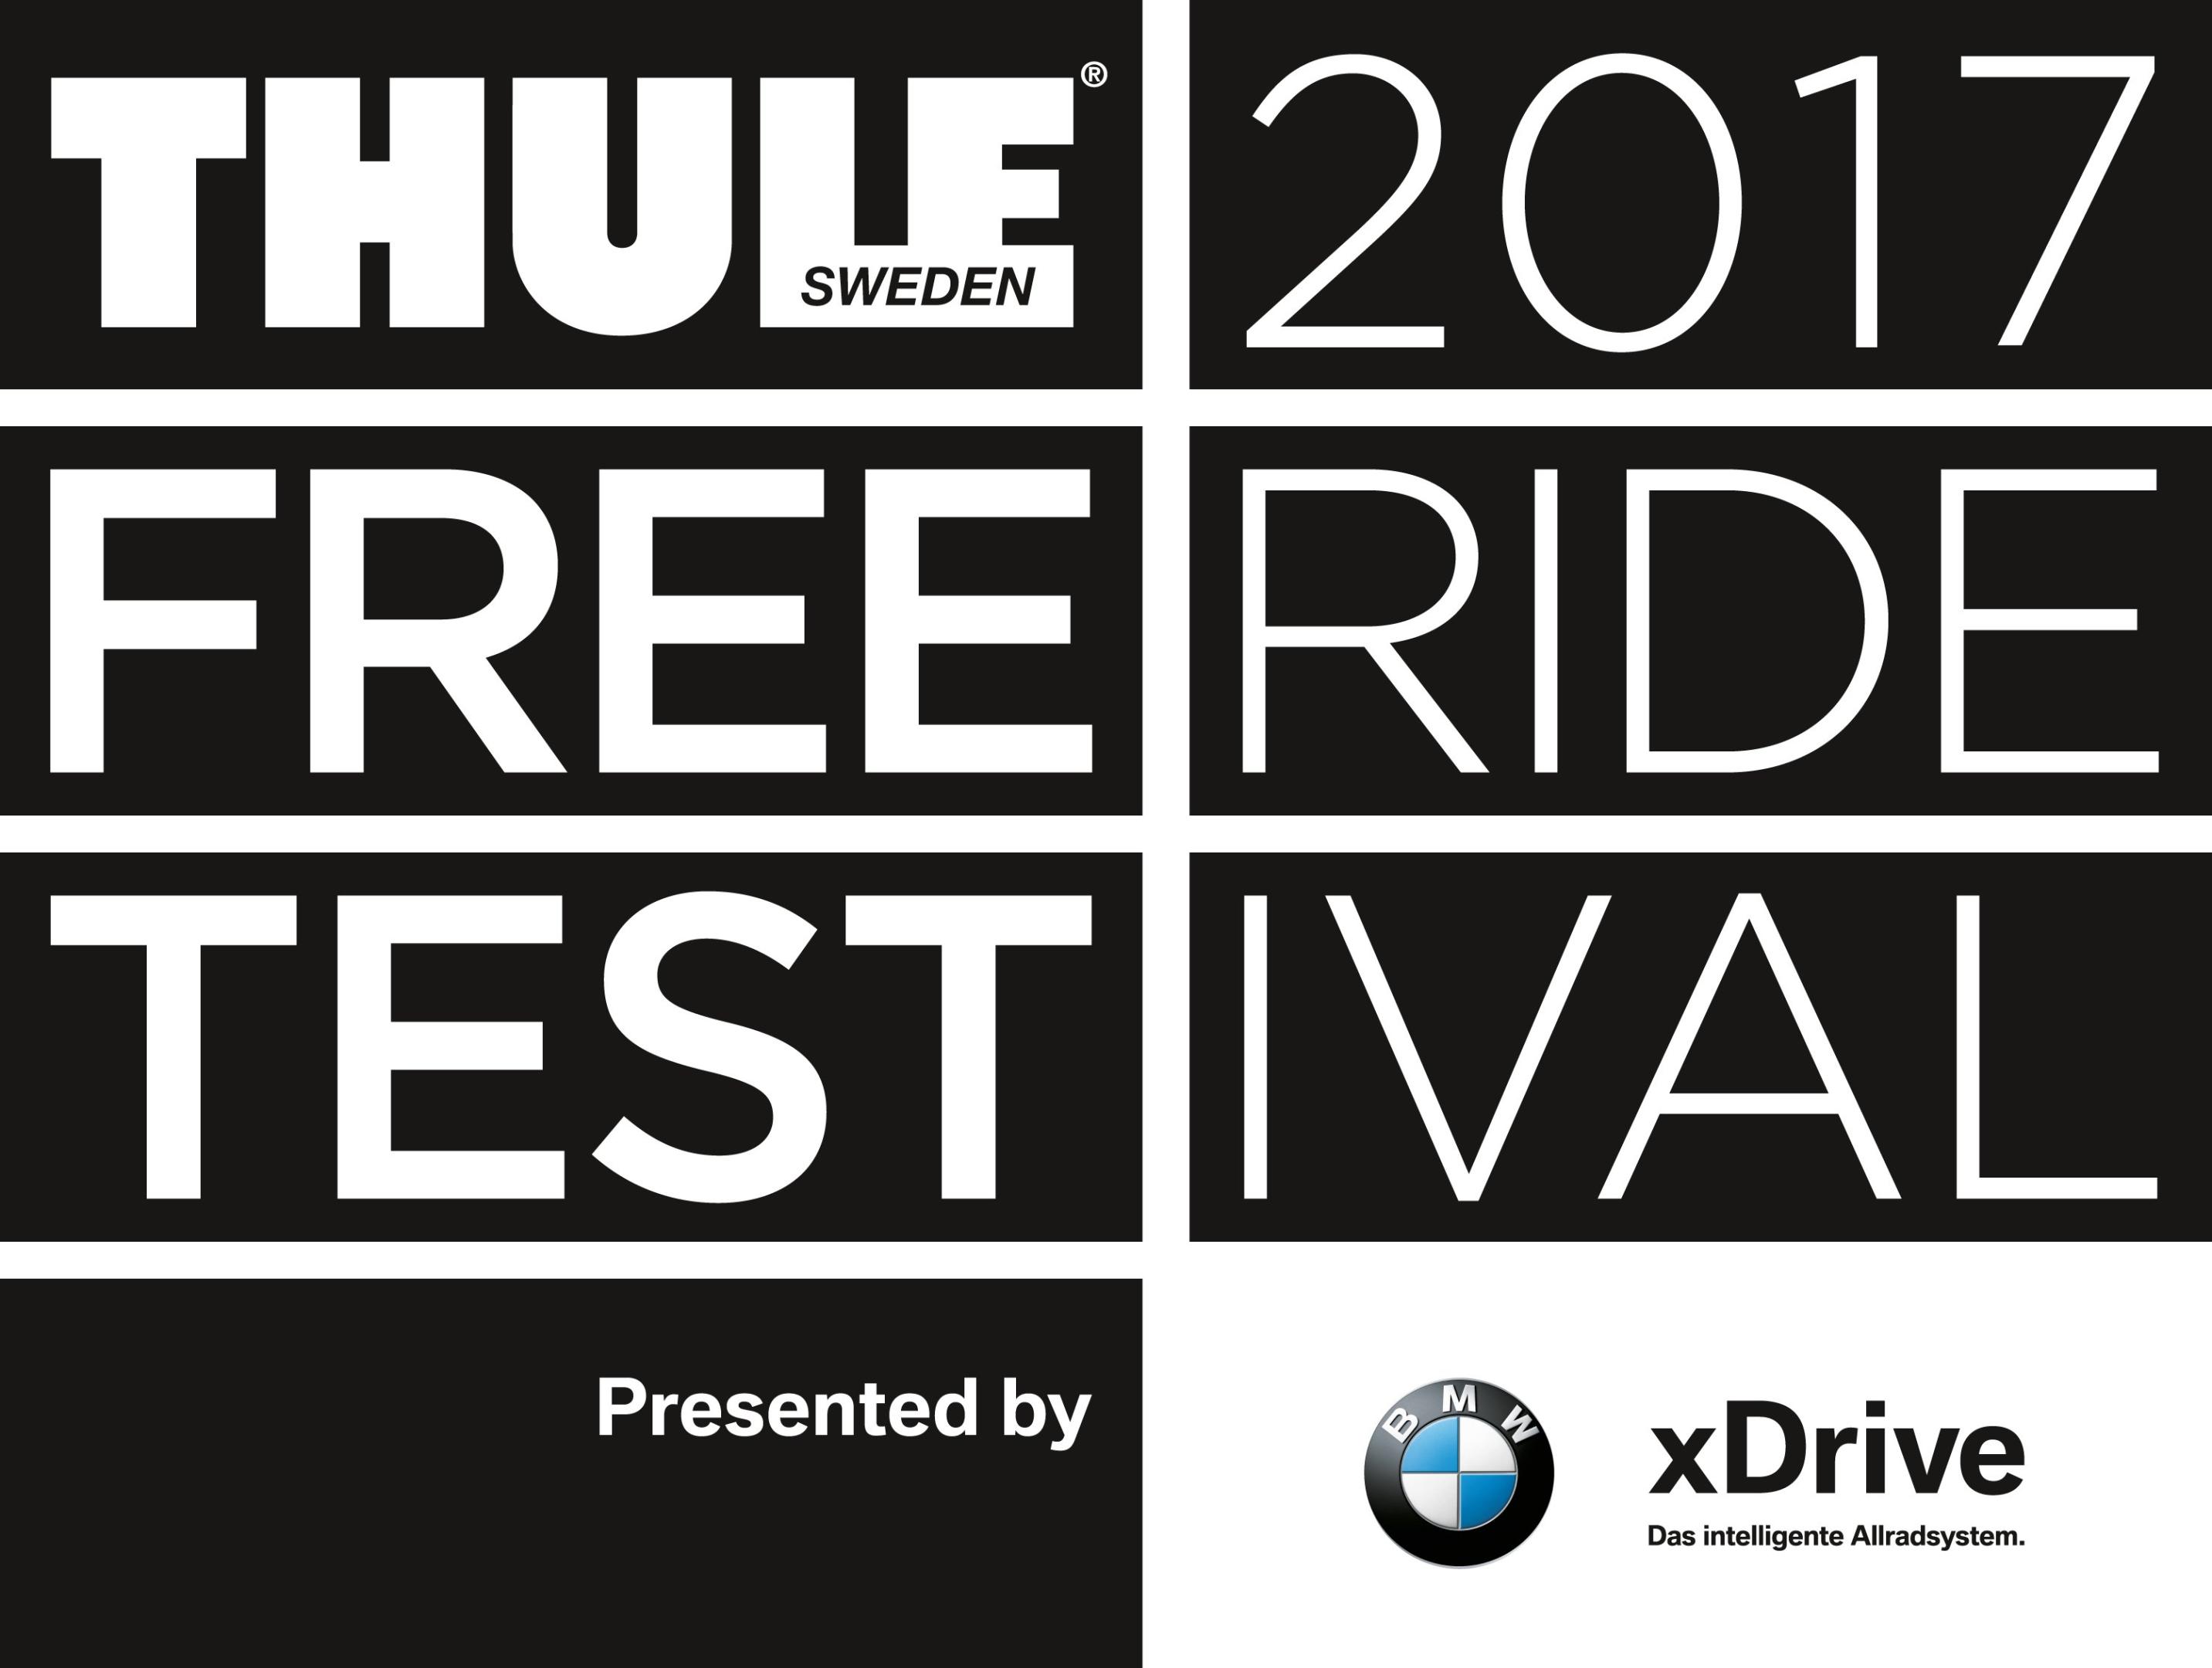 Event - Thule FreerideTestival 2017 presented by BMW xDrive: Testevent der Extraklasse in Saalbach, Warth-Schröcken und Kaunertal